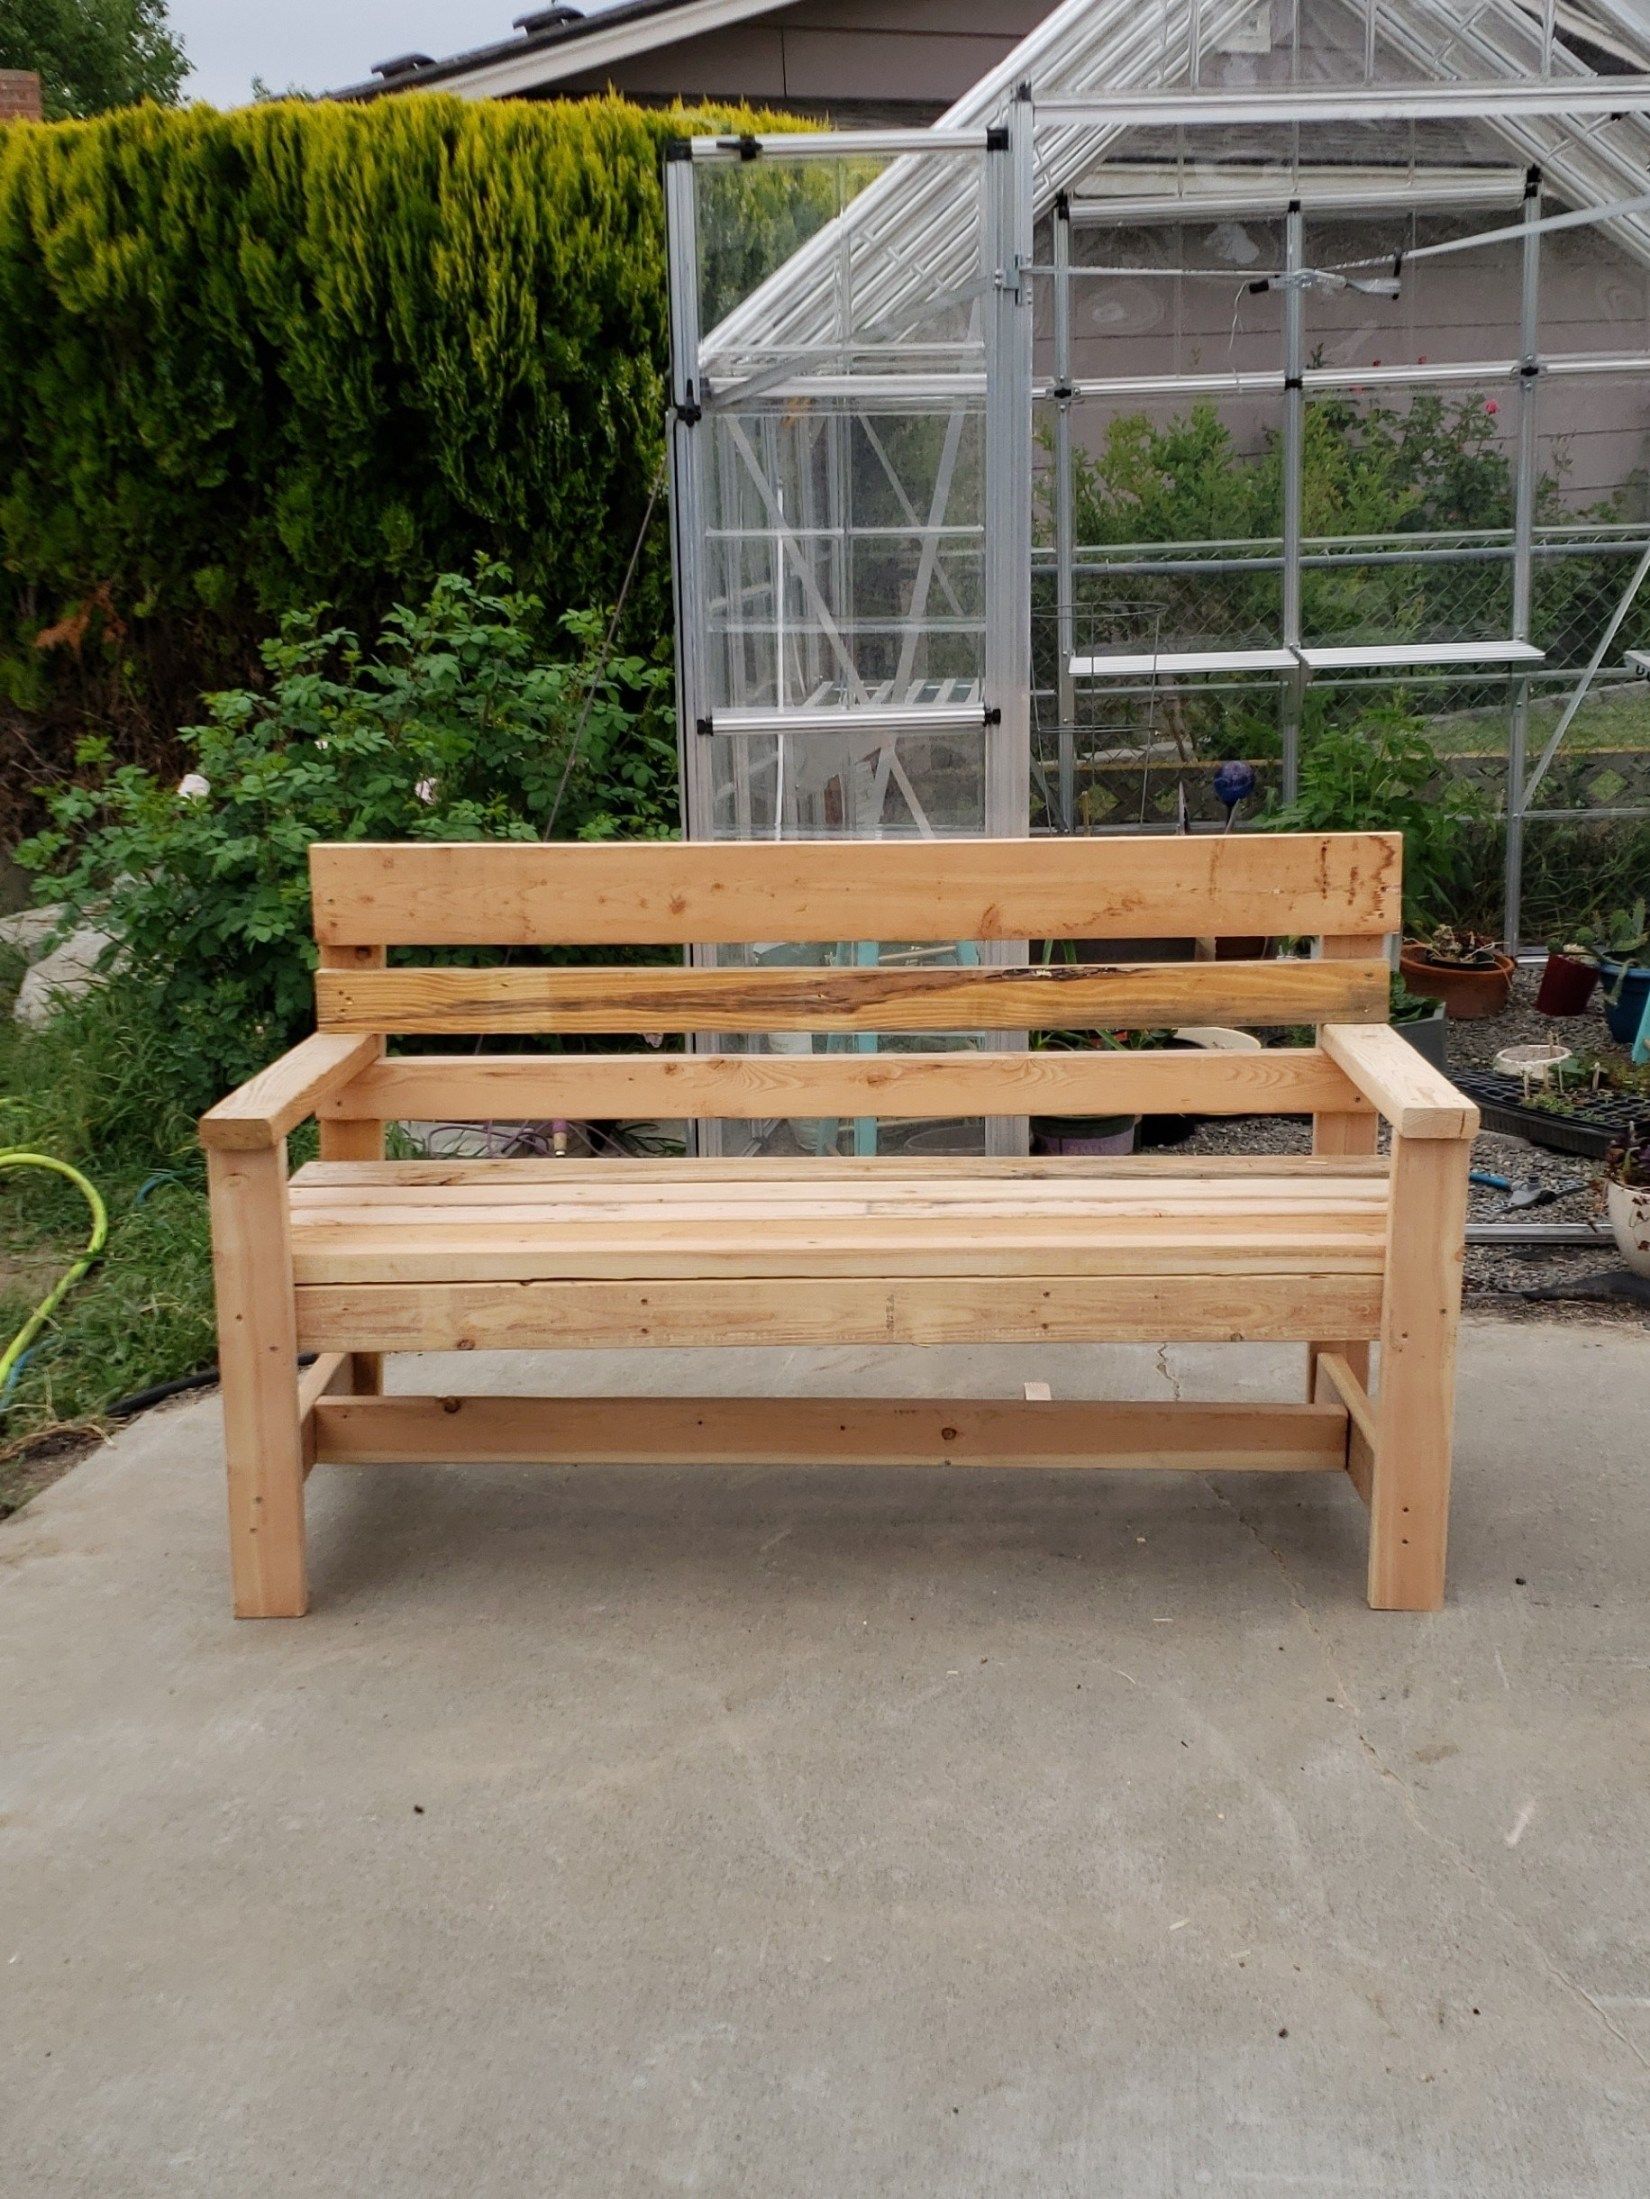 Scrap Wood Outdoor Bench Seat Diy Garden Bench Plans